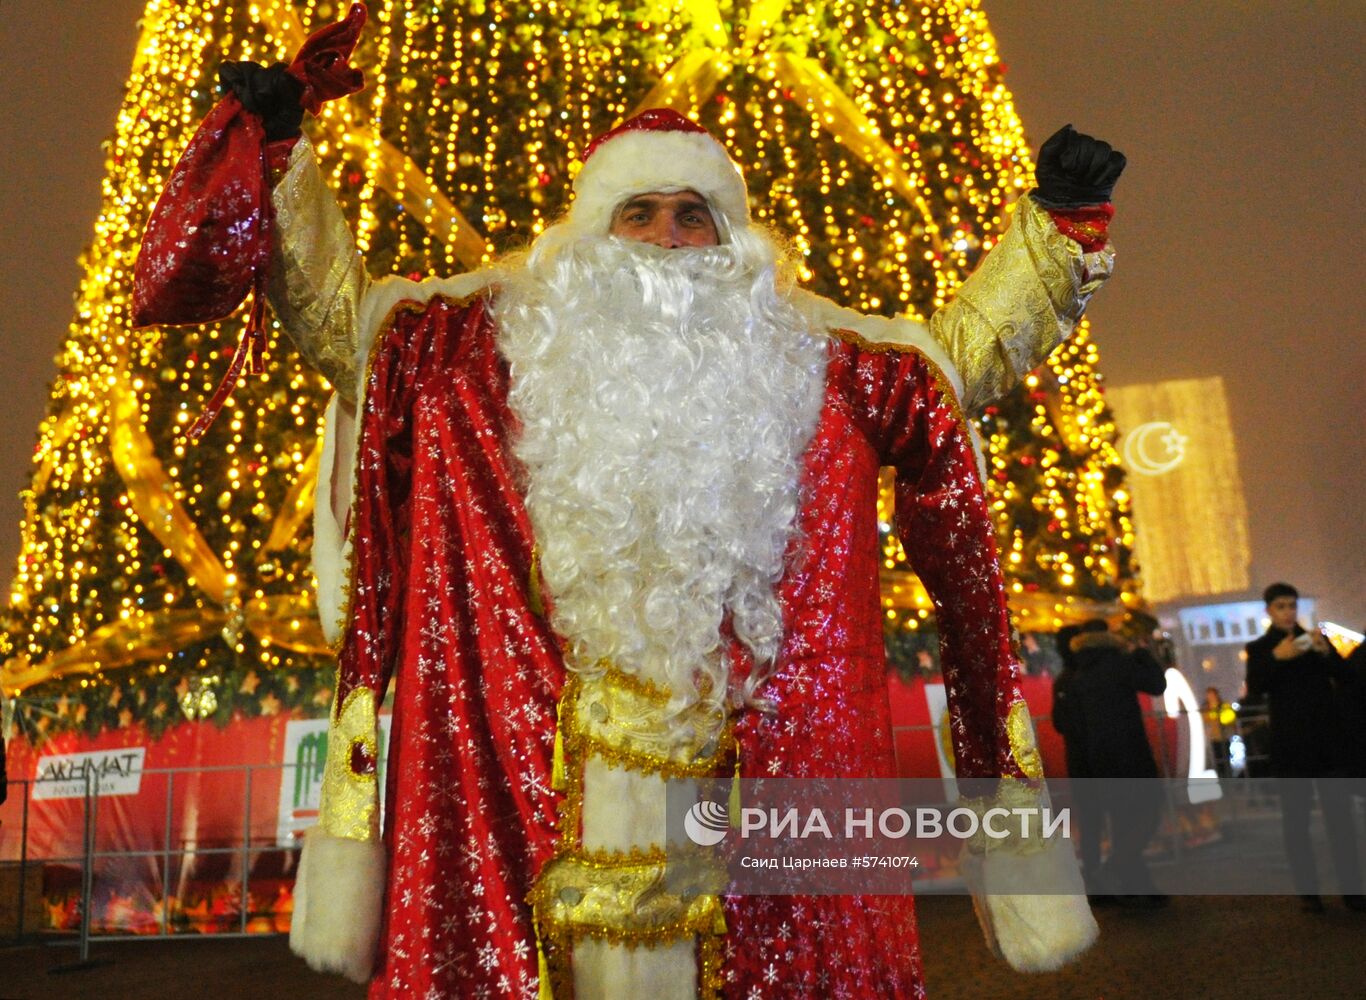 Открытие главной новогодней елки в Грозном